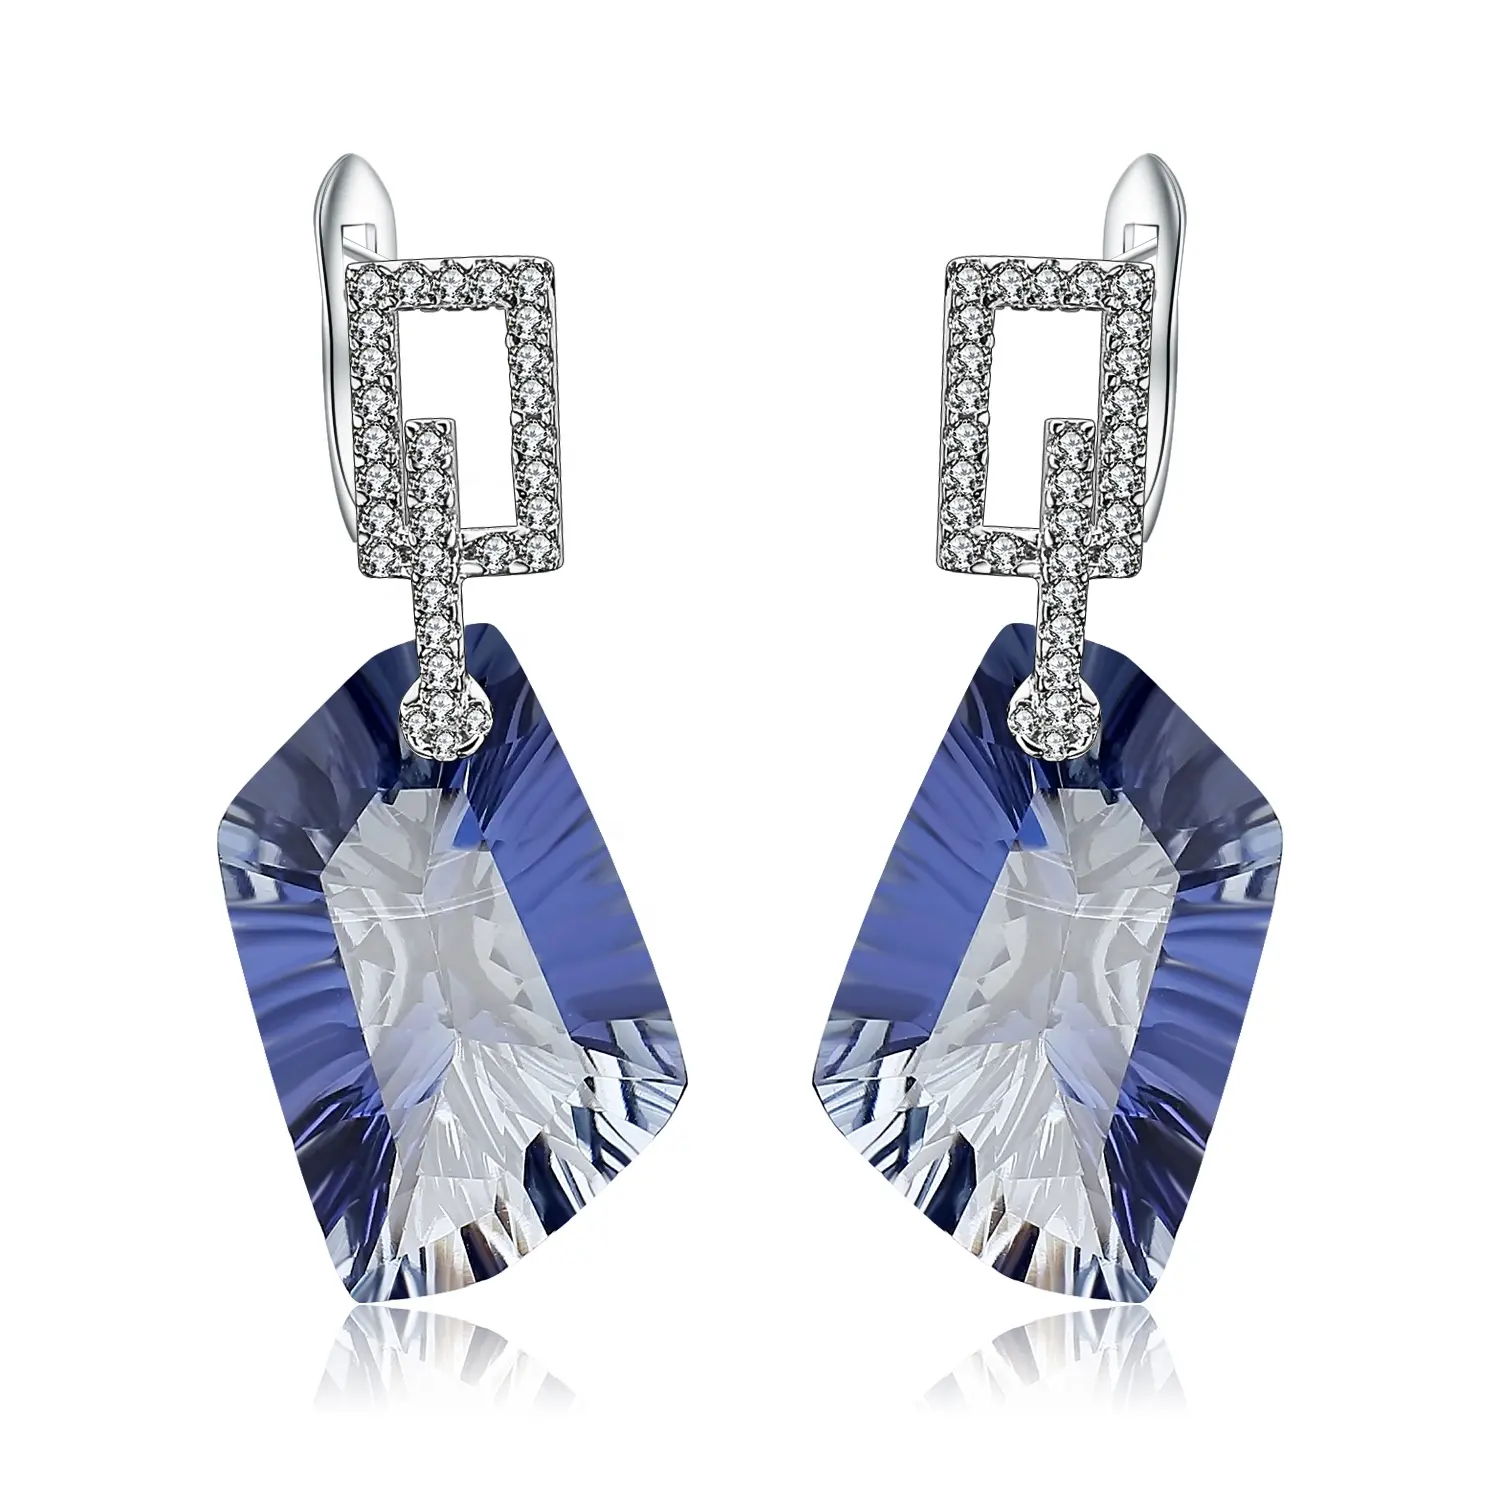 Abiding Fancy Cut Iolite Blue Mystic Quartz Gemstone Drop Earrings 925 Sterling SilverJewelry Unique Big Earrings Women